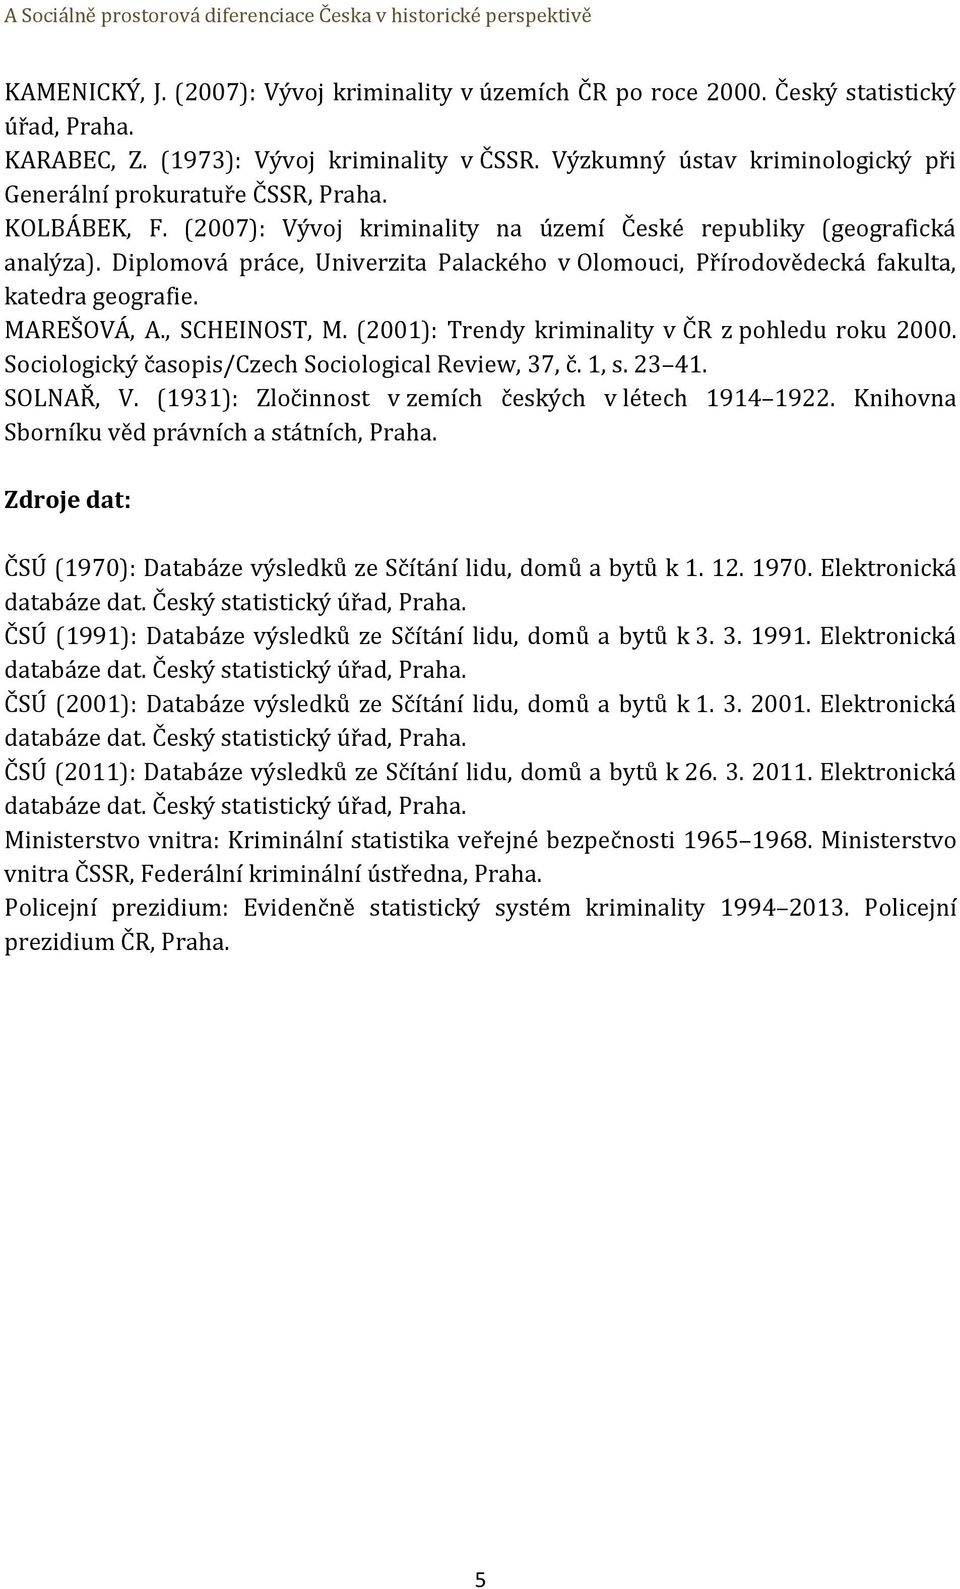 Diplomová práce, Univerzita Palackého v Olomouci, Přírodovědecká fakulta, katedra geografie. MAREŠOVÁ, A., SCHEINOST, M. (2001): Trendy kriminality v ČR z pohledu roku 2000.